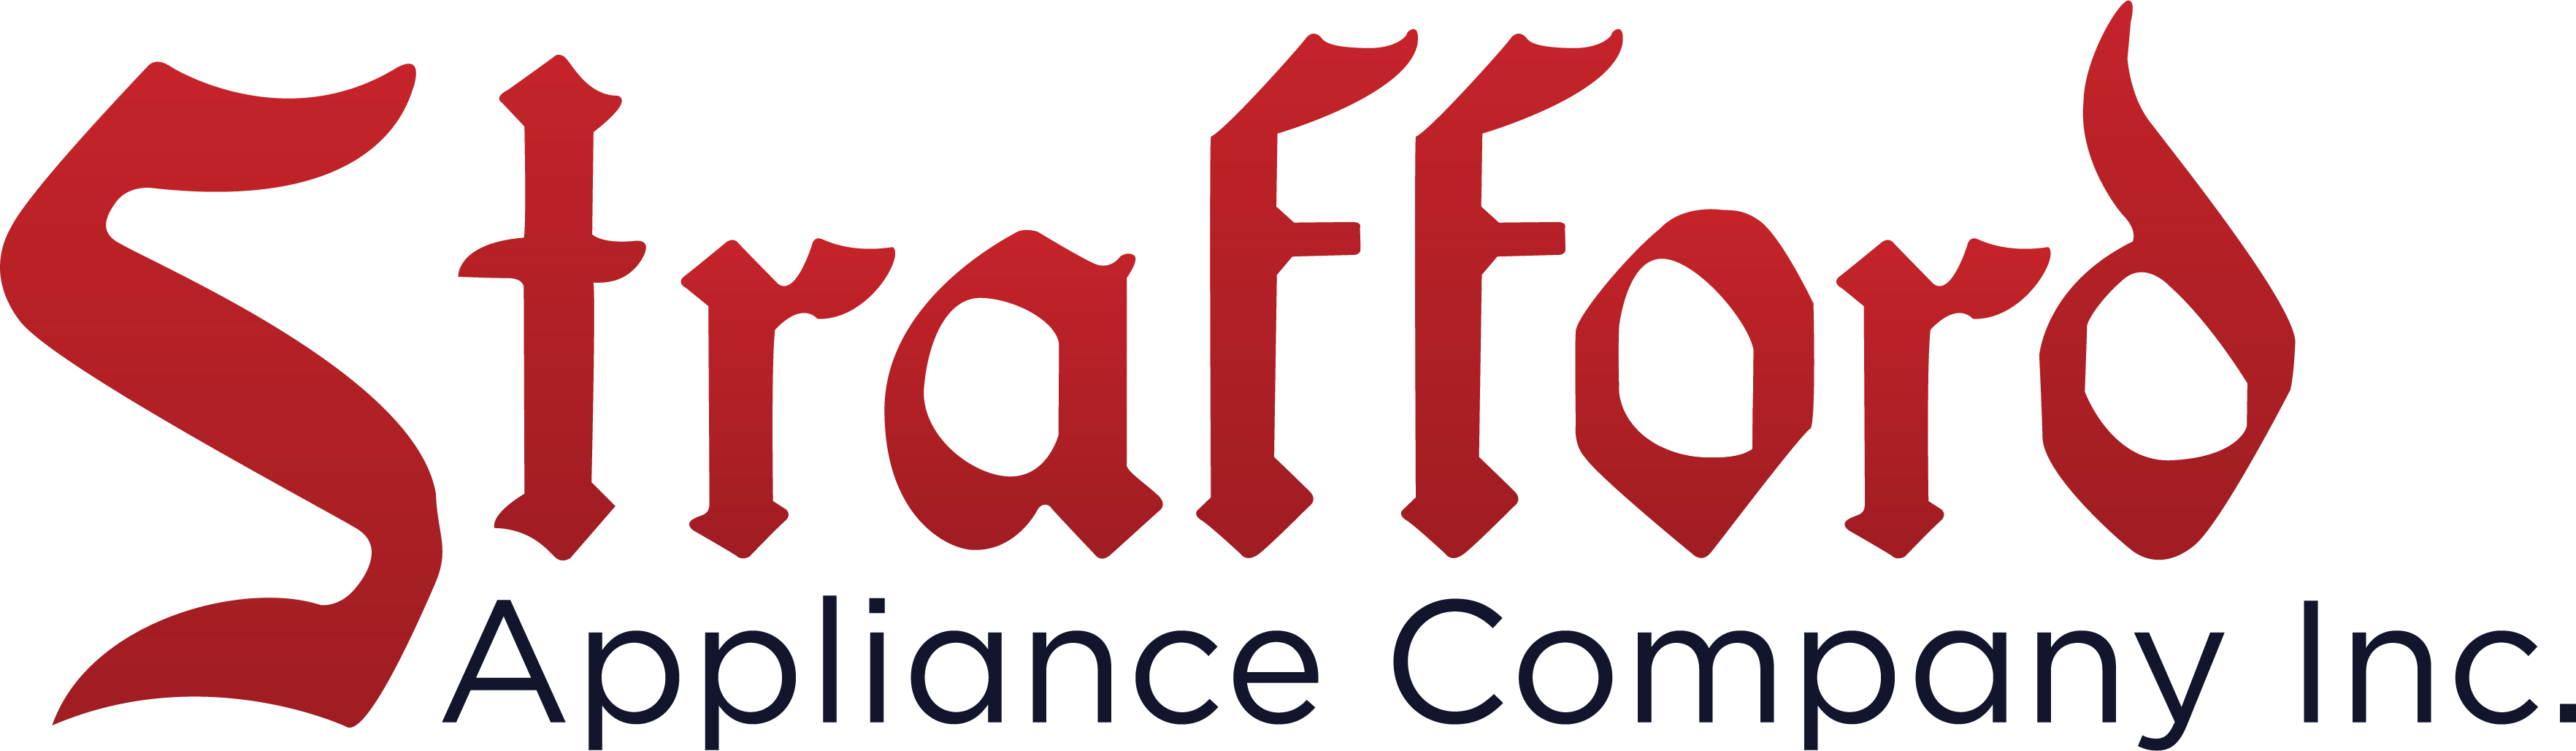 Strafford Appliance Company